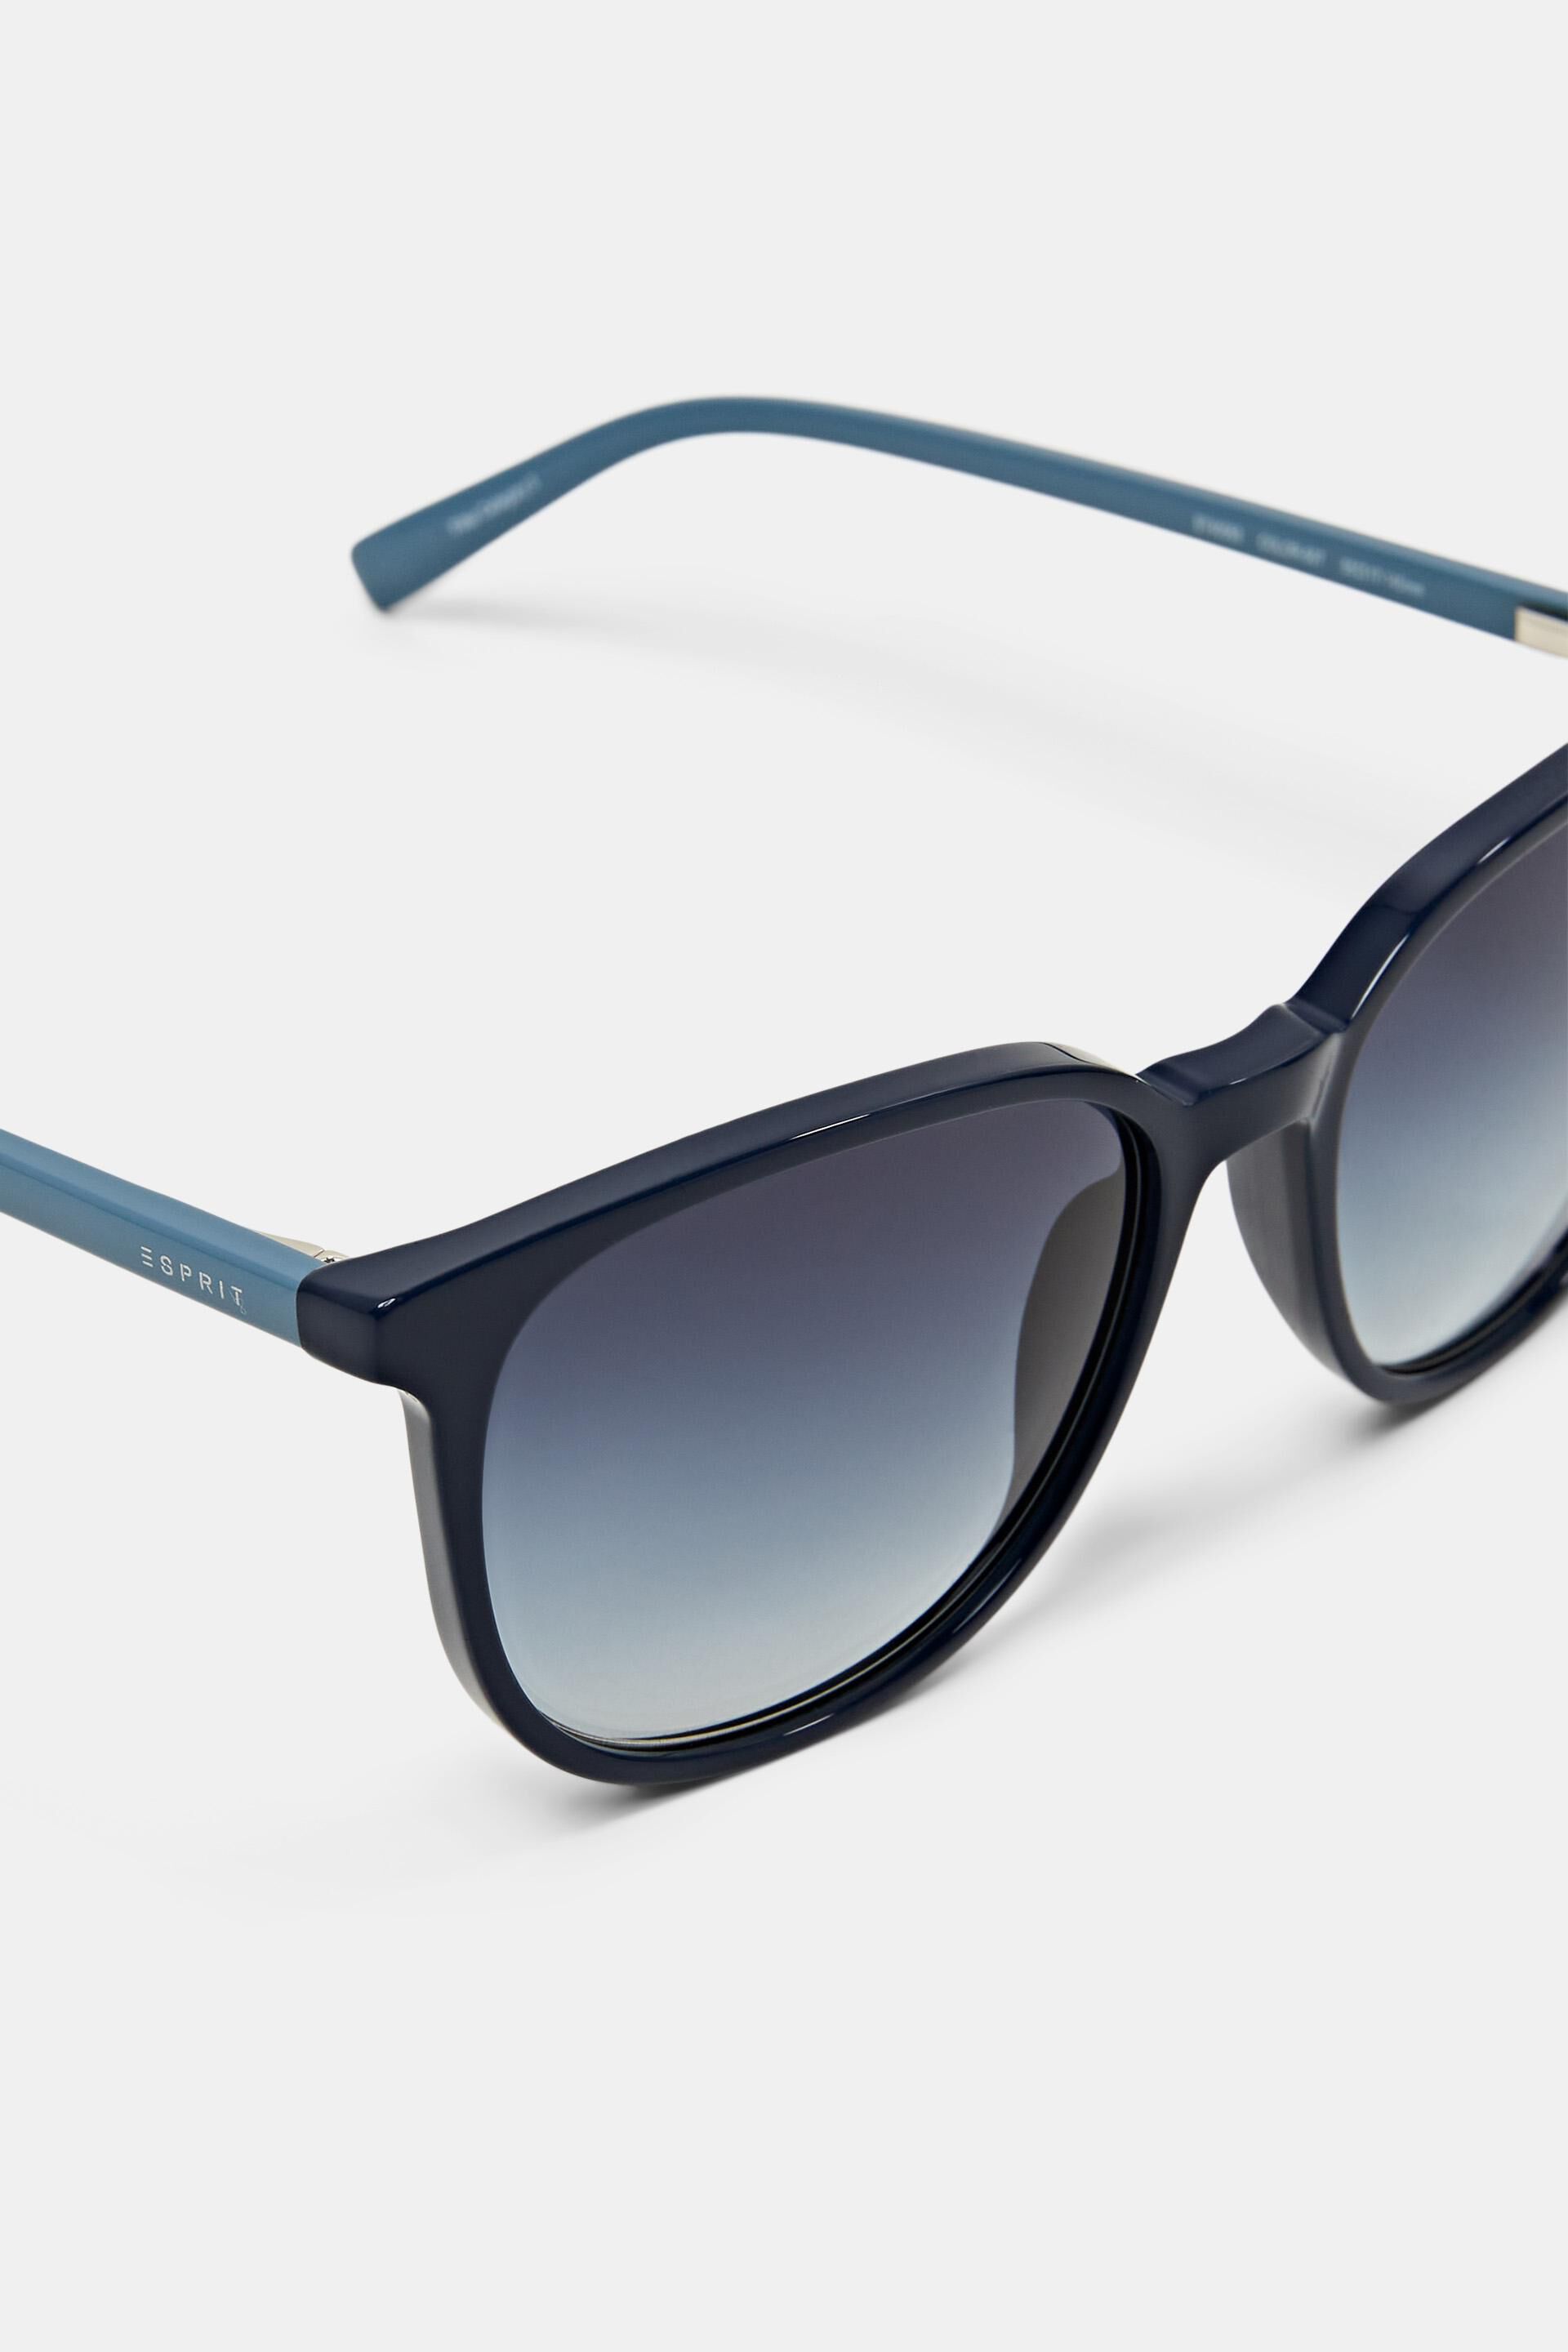 Esprit frame sunglasses Colour